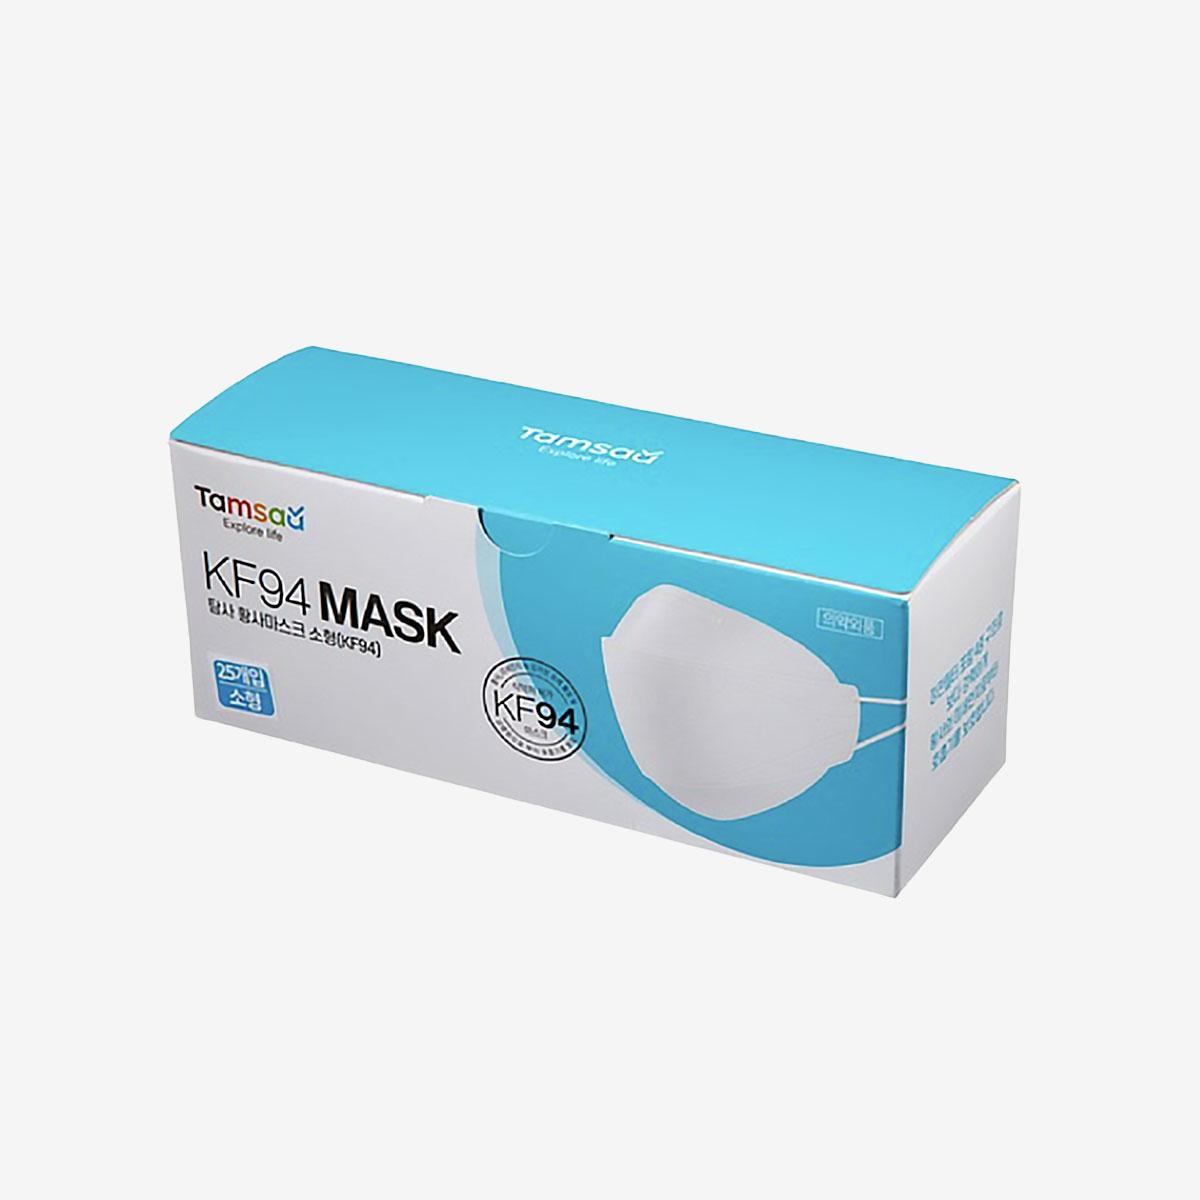 KF94 Mask (25 Sheets) (Small)